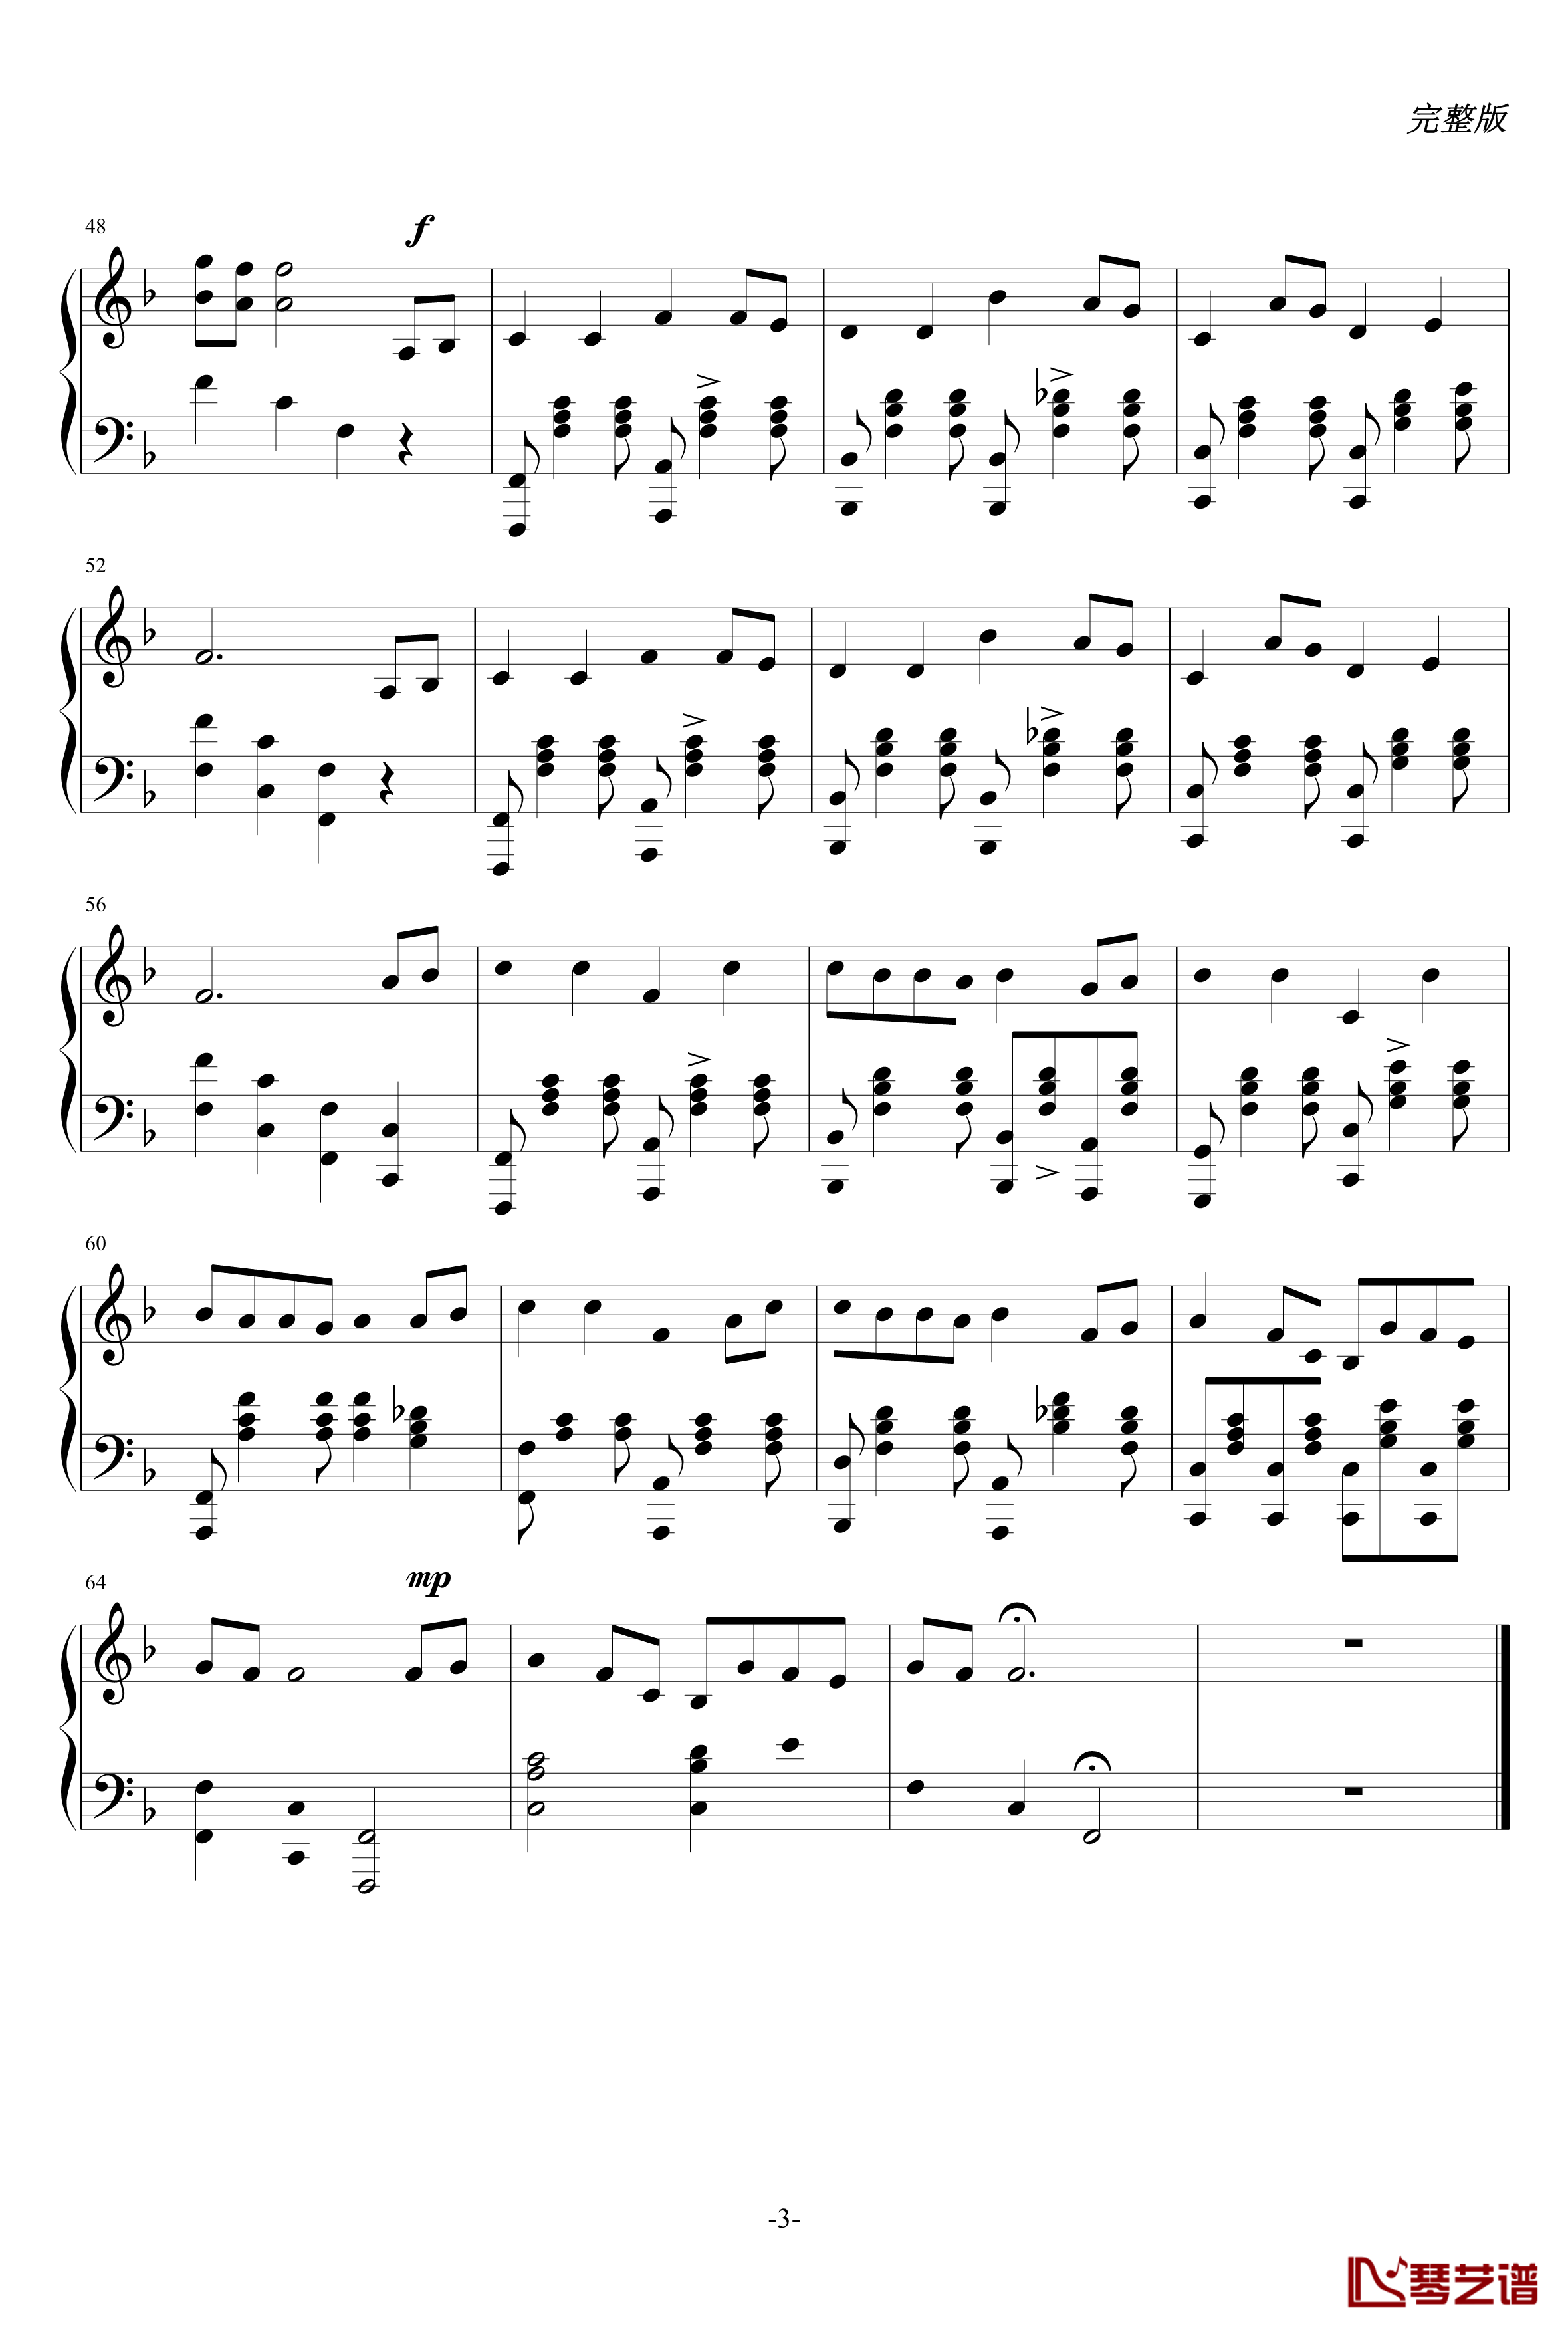 天父的花园钢琴谱-完整版-耶酥3